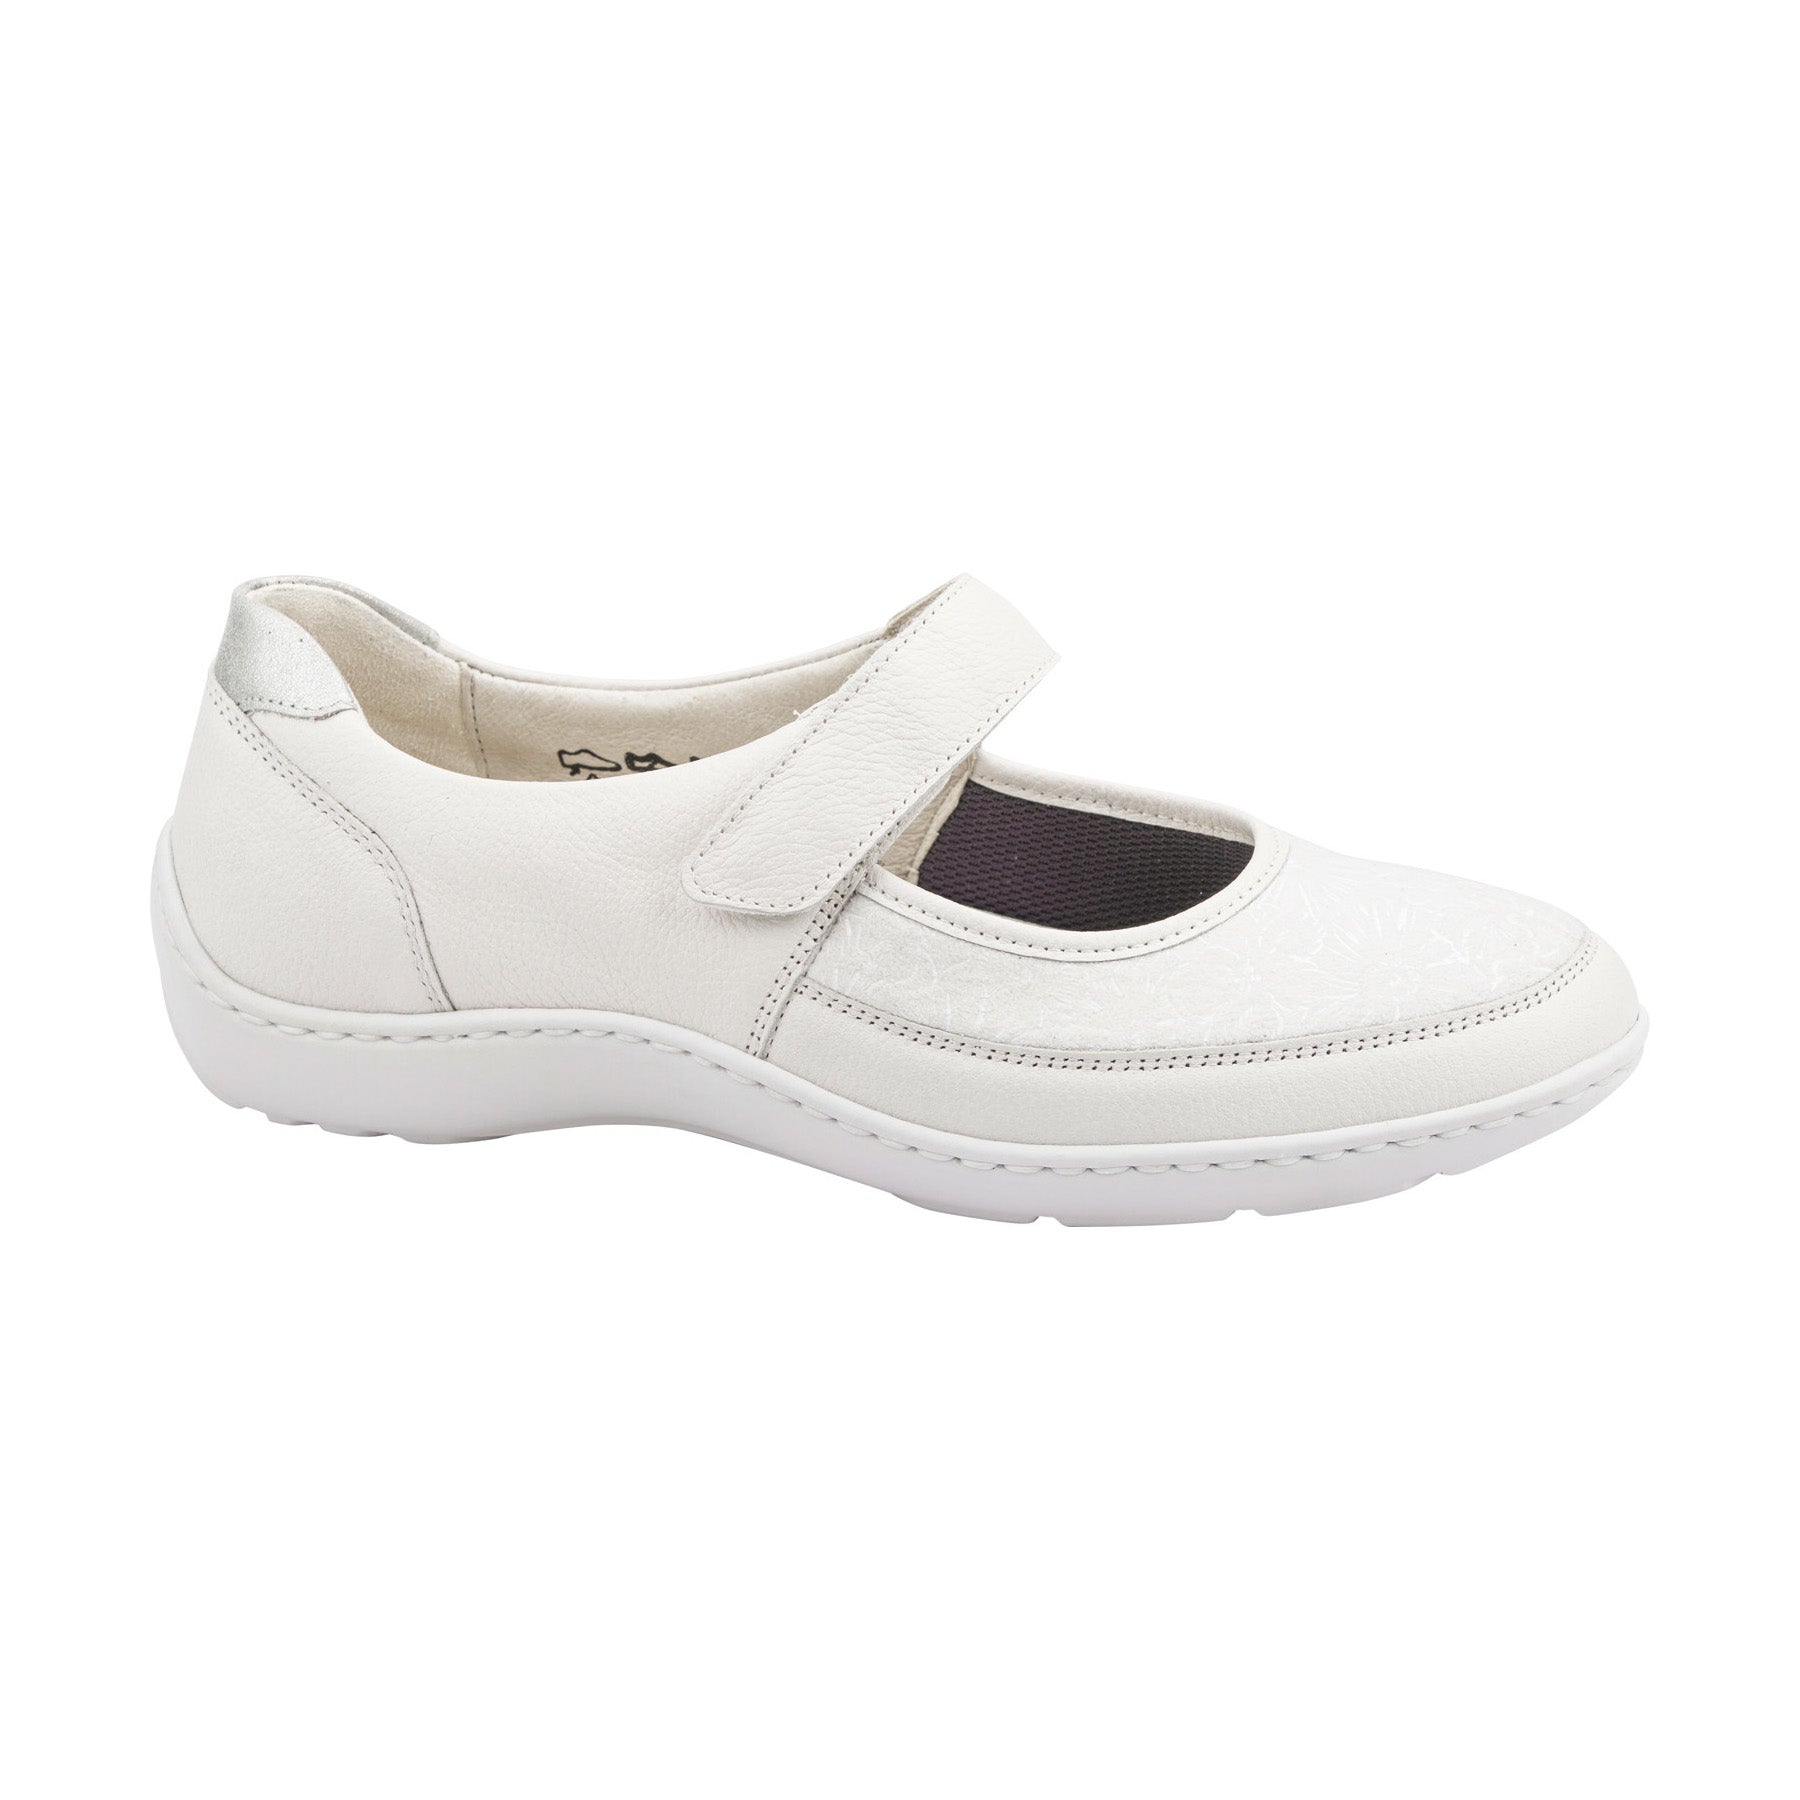 Waldlaufer Henni 496H33 cream leather Mary Jane style shoes with ...